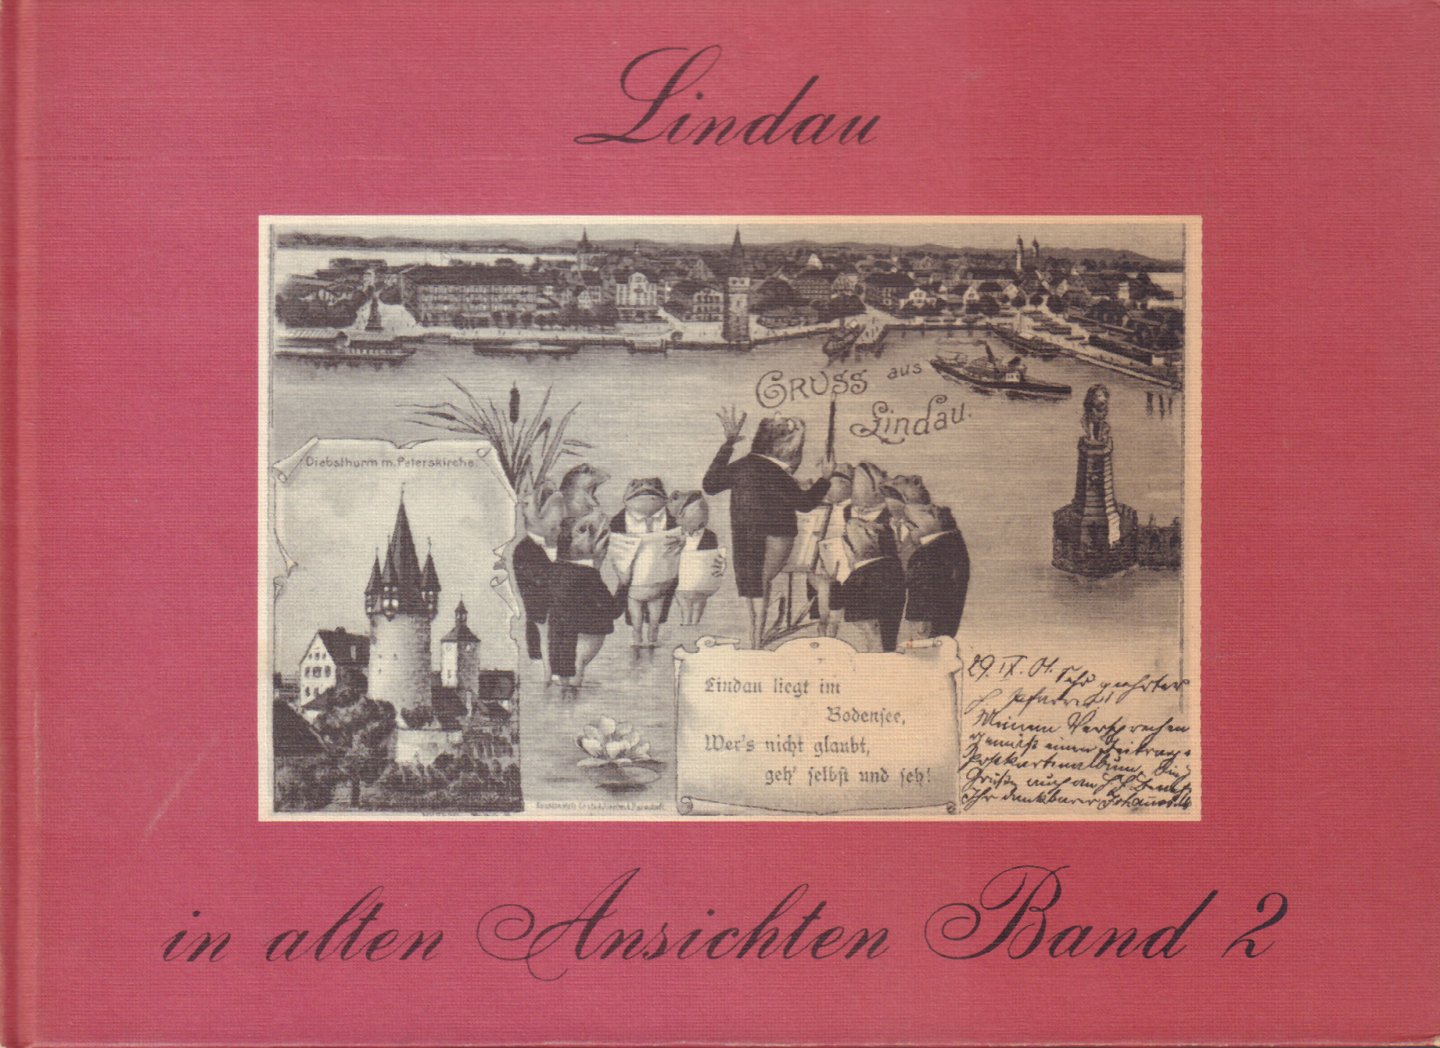 Dobras, Werner - Lindau in Alten Ansichten Band 2, kleine hardcover, goede staat (wat lichte slijtage randen en verkleuring omslag)